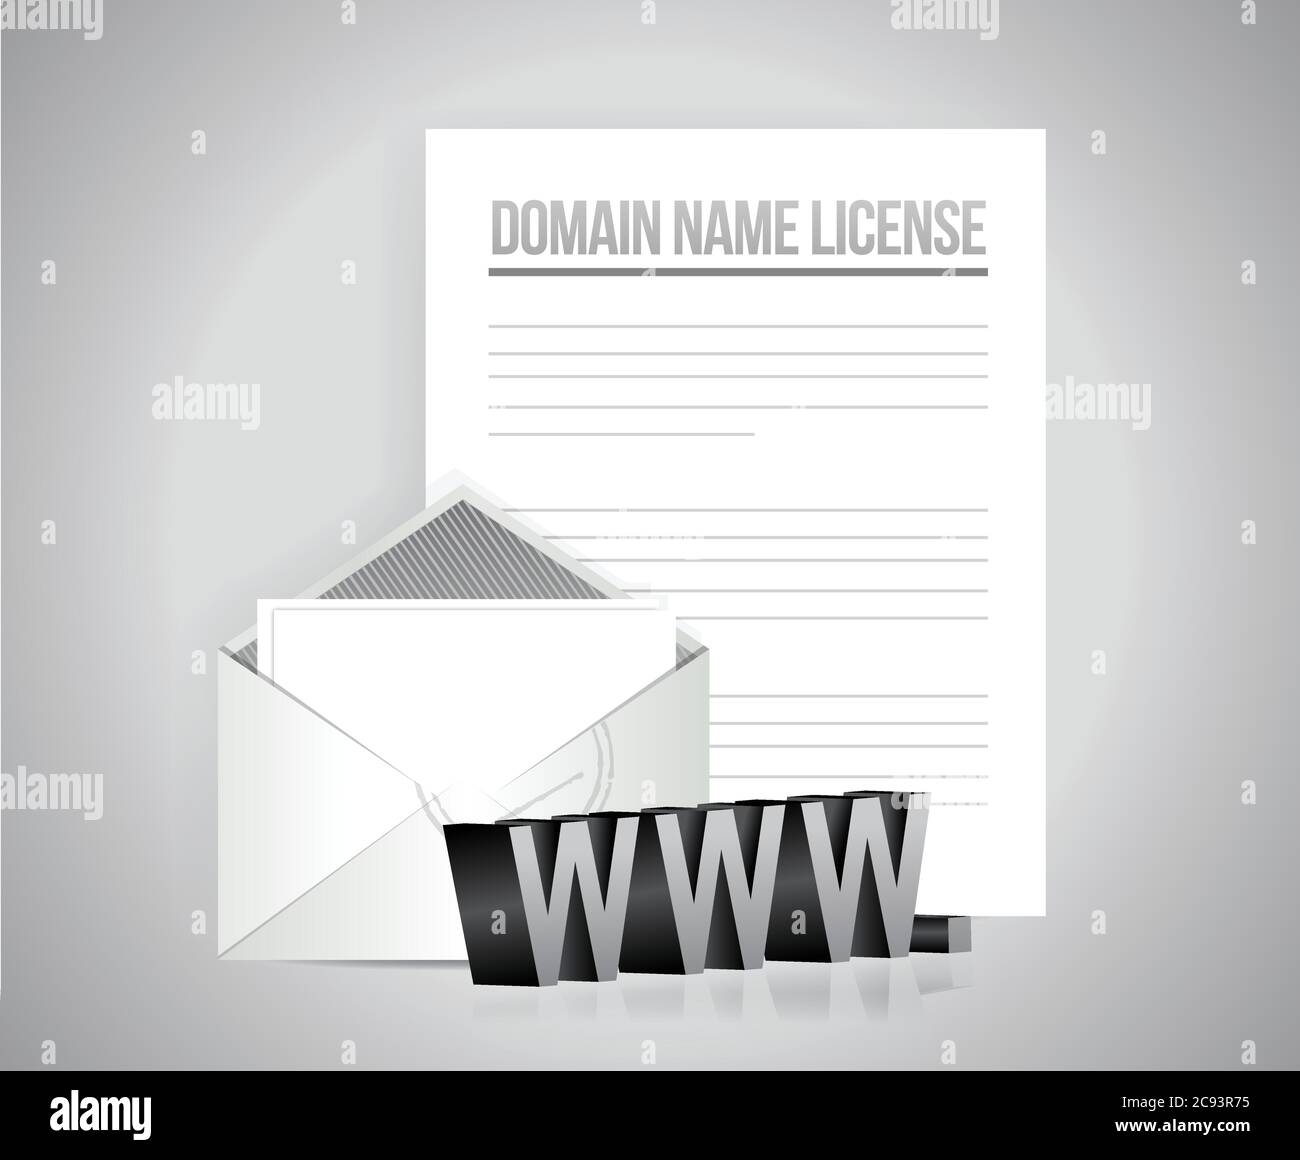 Lizenzpapiere für Domänennamen, Illustration auf grauem Hintergrund Stock Vektor